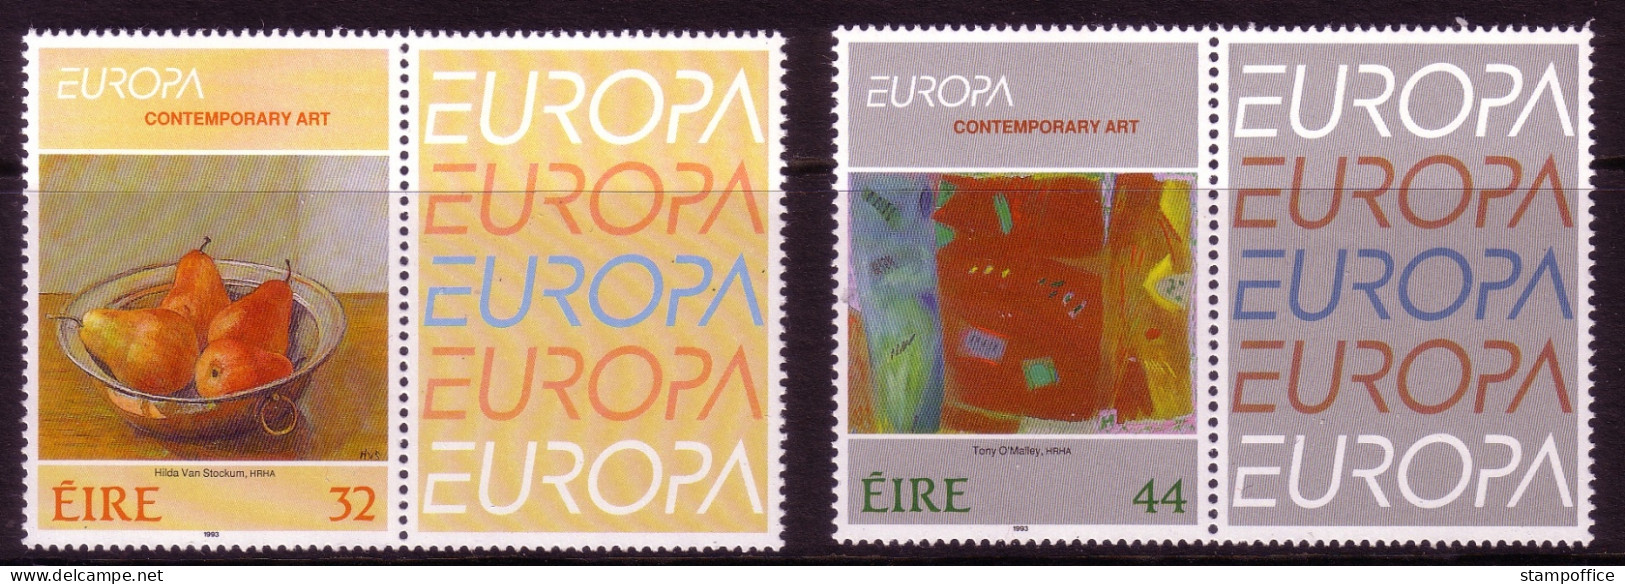 IRLAND MI-NR. 825-826 POSTFRISCH(MINT) ZIERFELD RECHTS EUROPA 1993 - ZEITGENÖSSISCHE KUNST - 1993